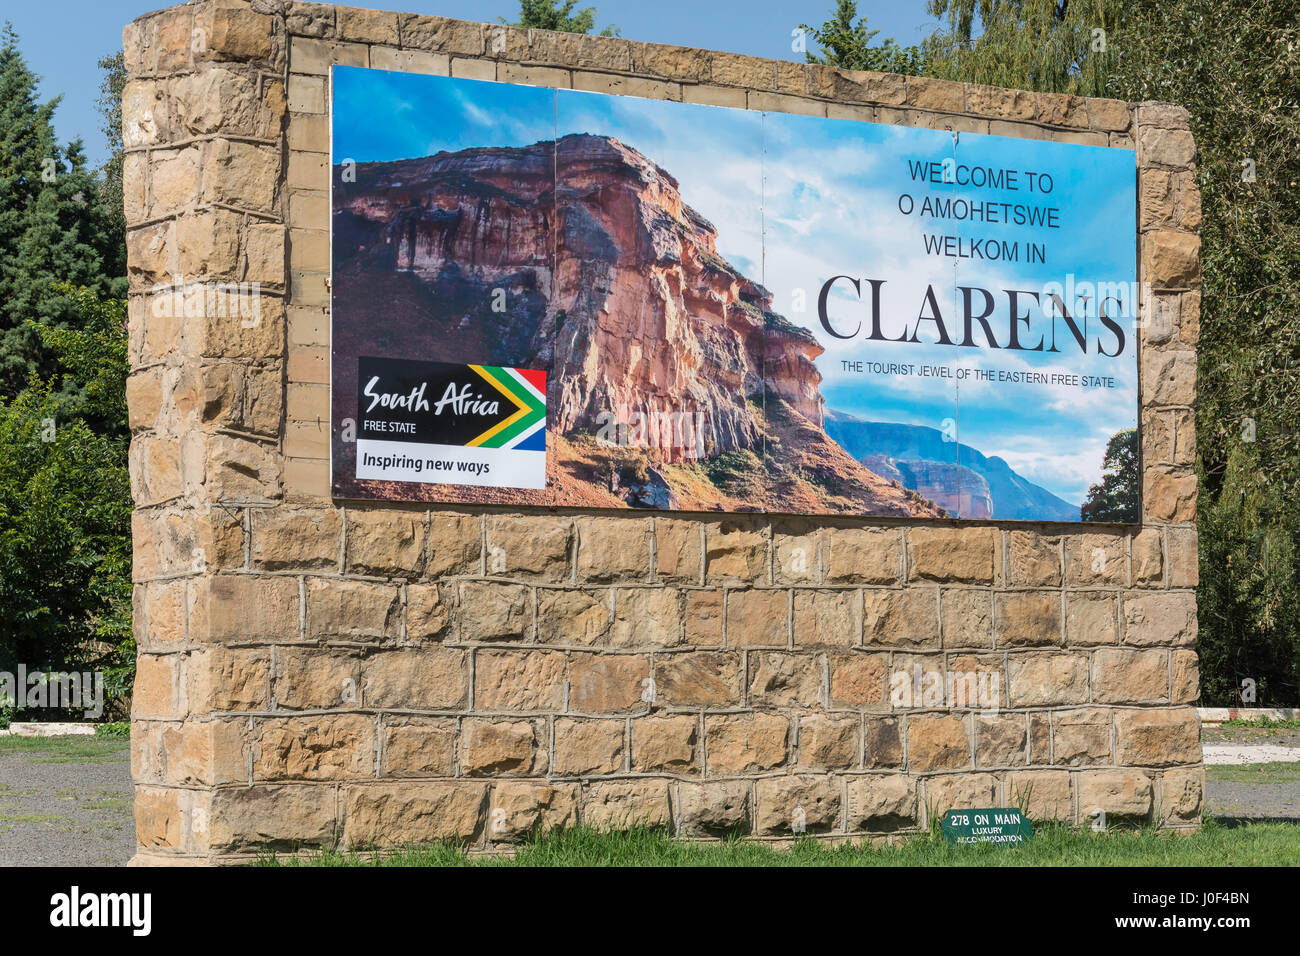 Bienvenue à Clarens signe en entrée de ville, Clarens, la Province de l'État libre, Afrique du Sud Banque D'Images